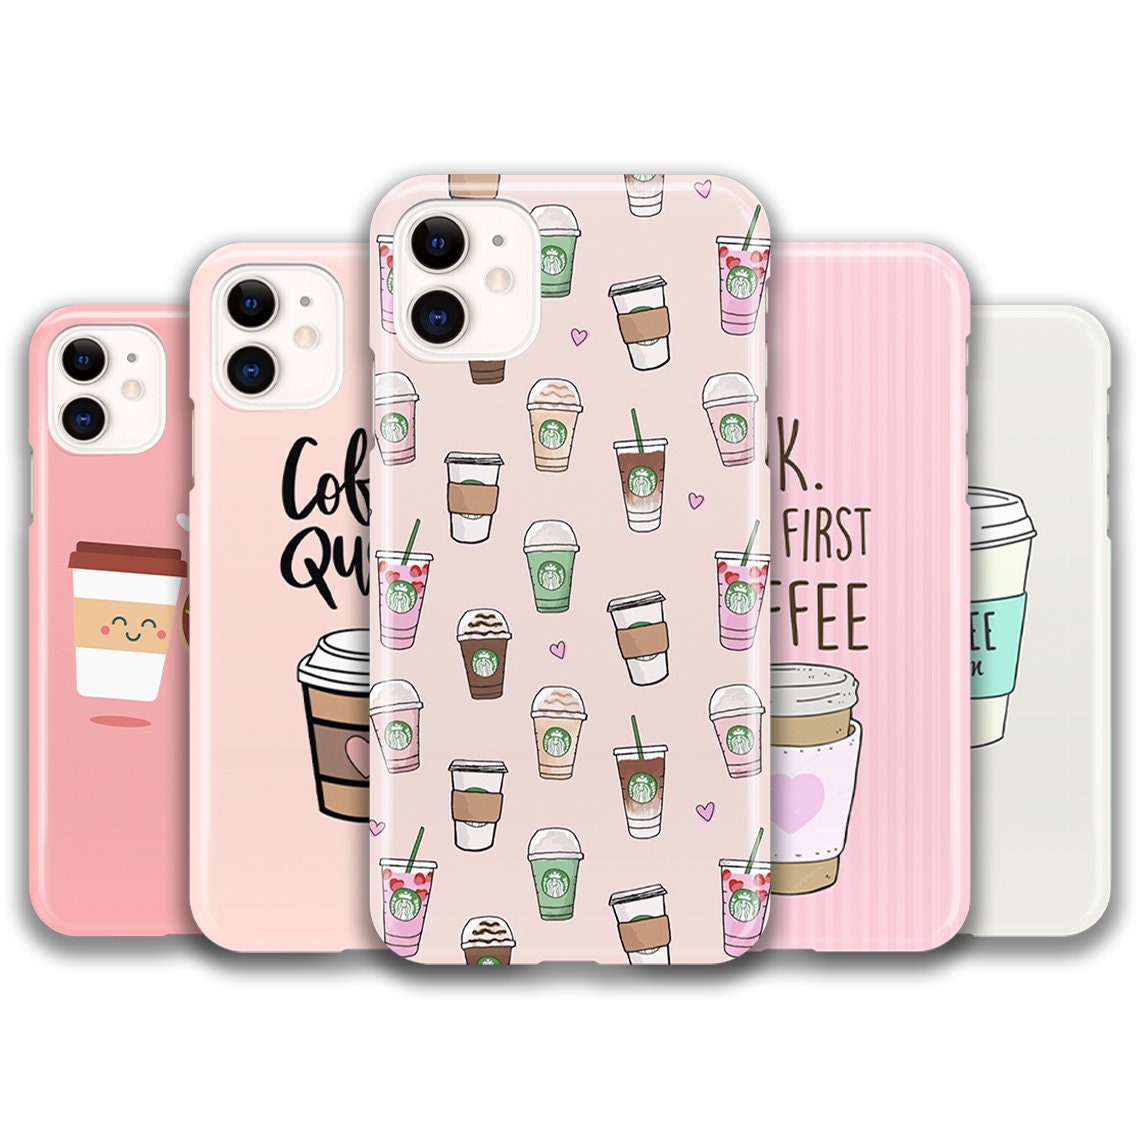 iPhone 13 Pro Premium Starbucks Black Case- Gucci – Satbro® Cases